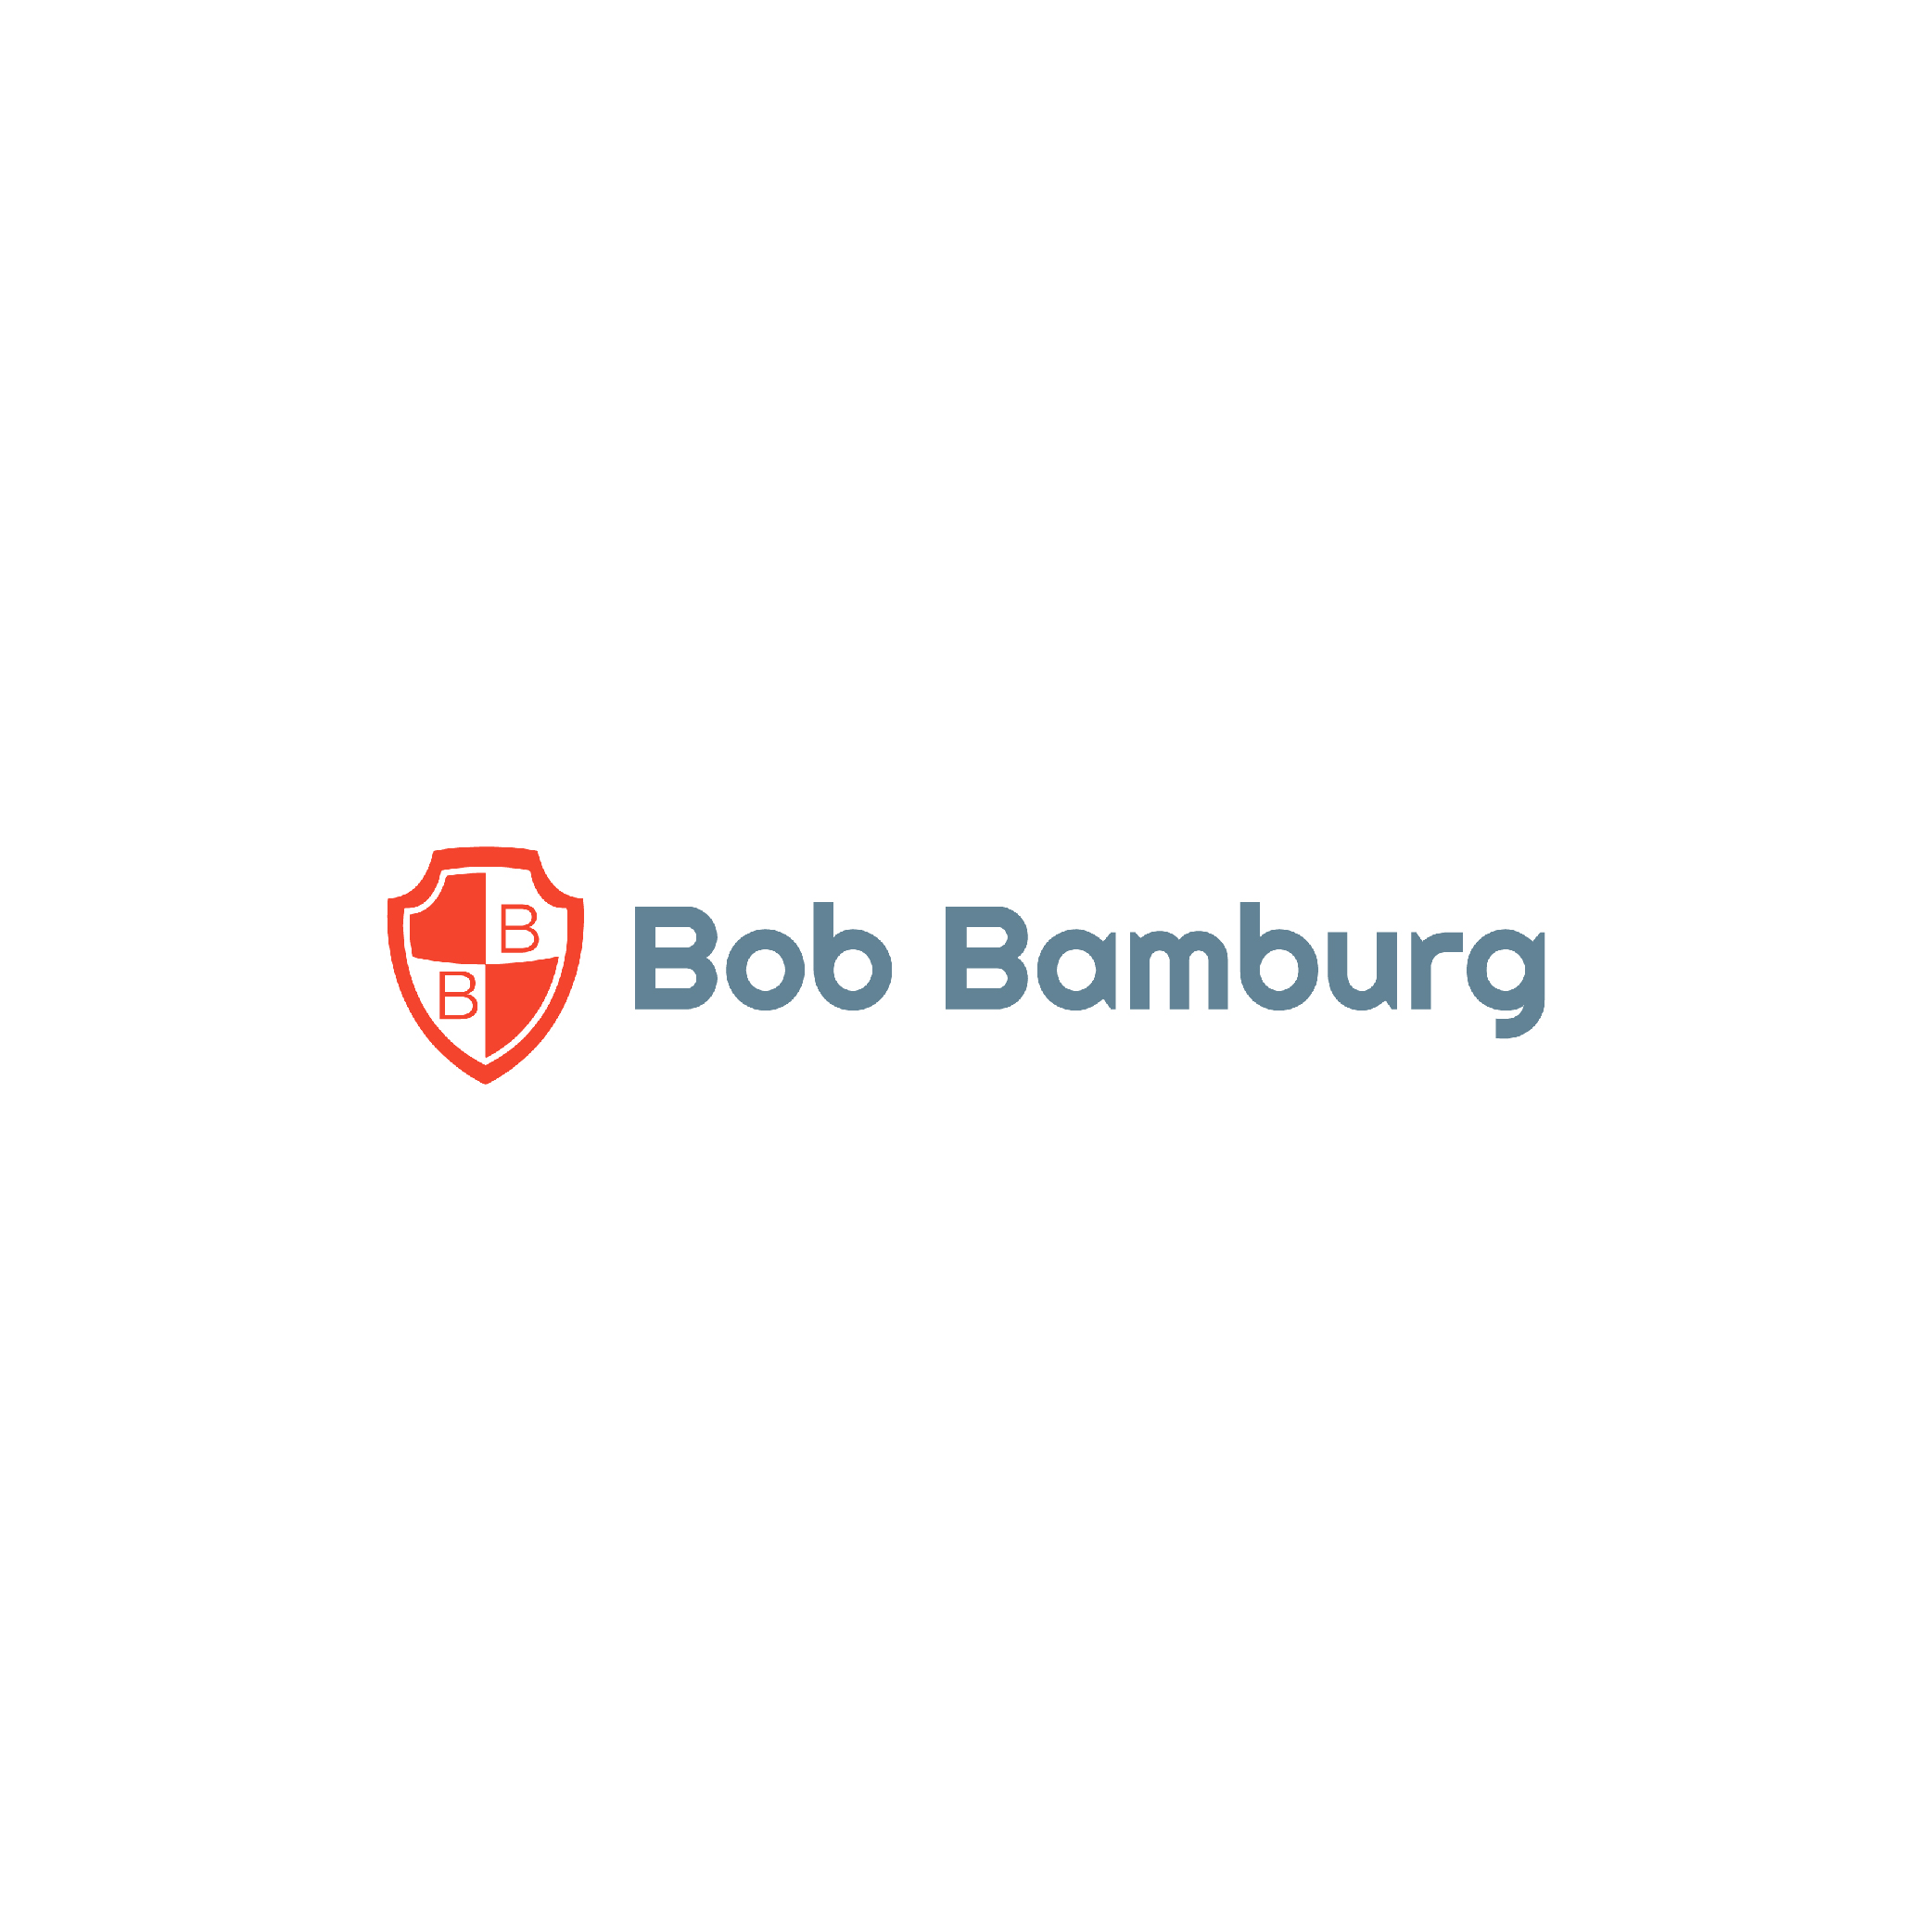 Bob Bamburg Box.jpg